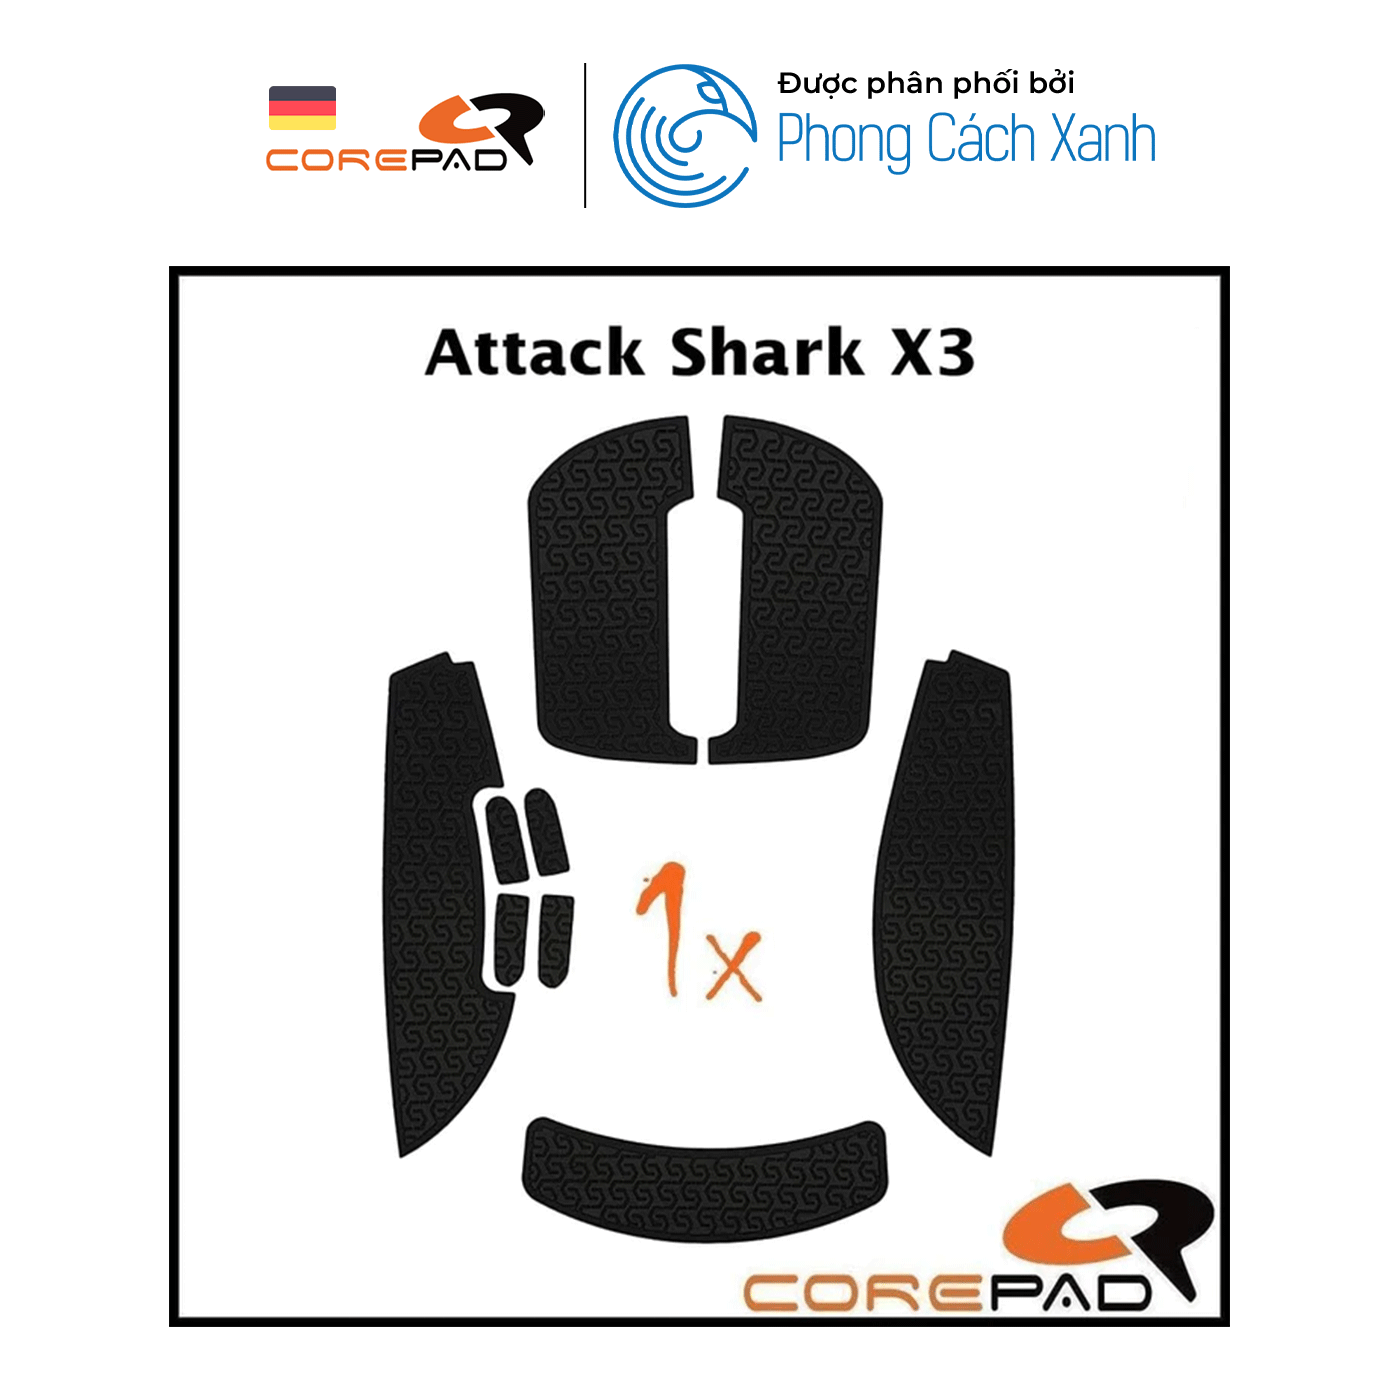 Bộ grip tape Corepad Soft Grips Attack Shark X3 - Hàng Chính Hãng